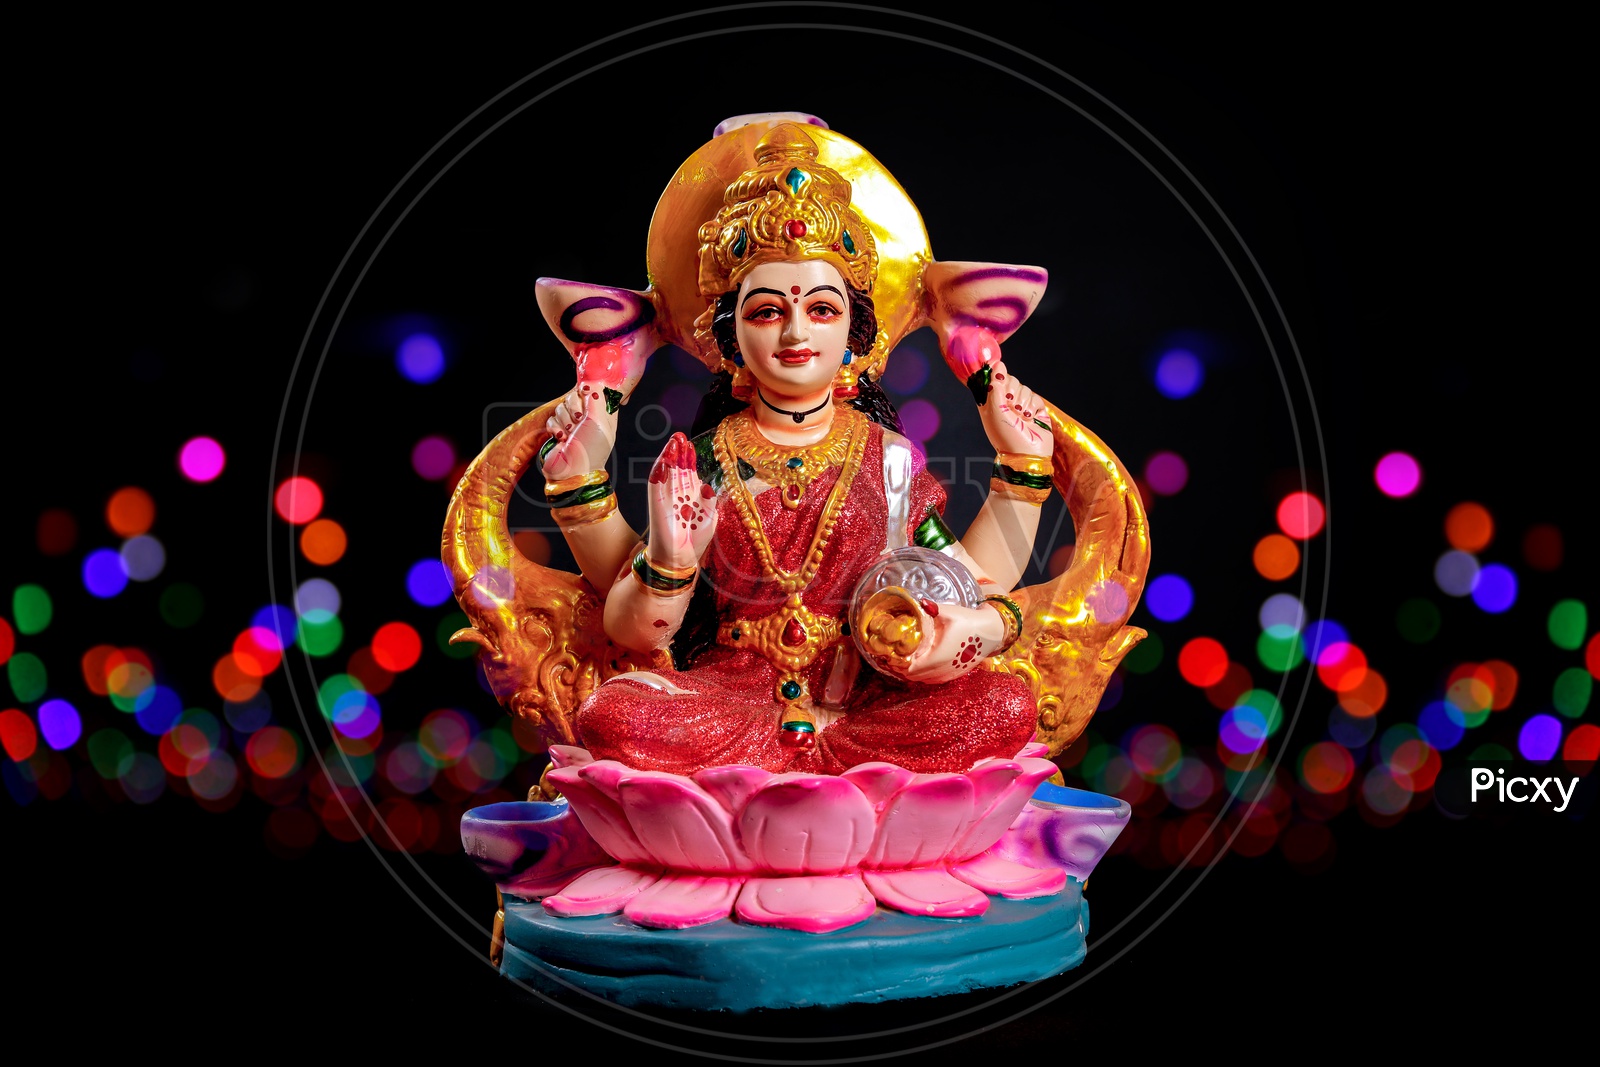 Sri Lakshmi Devi Idol with Bokeh Background